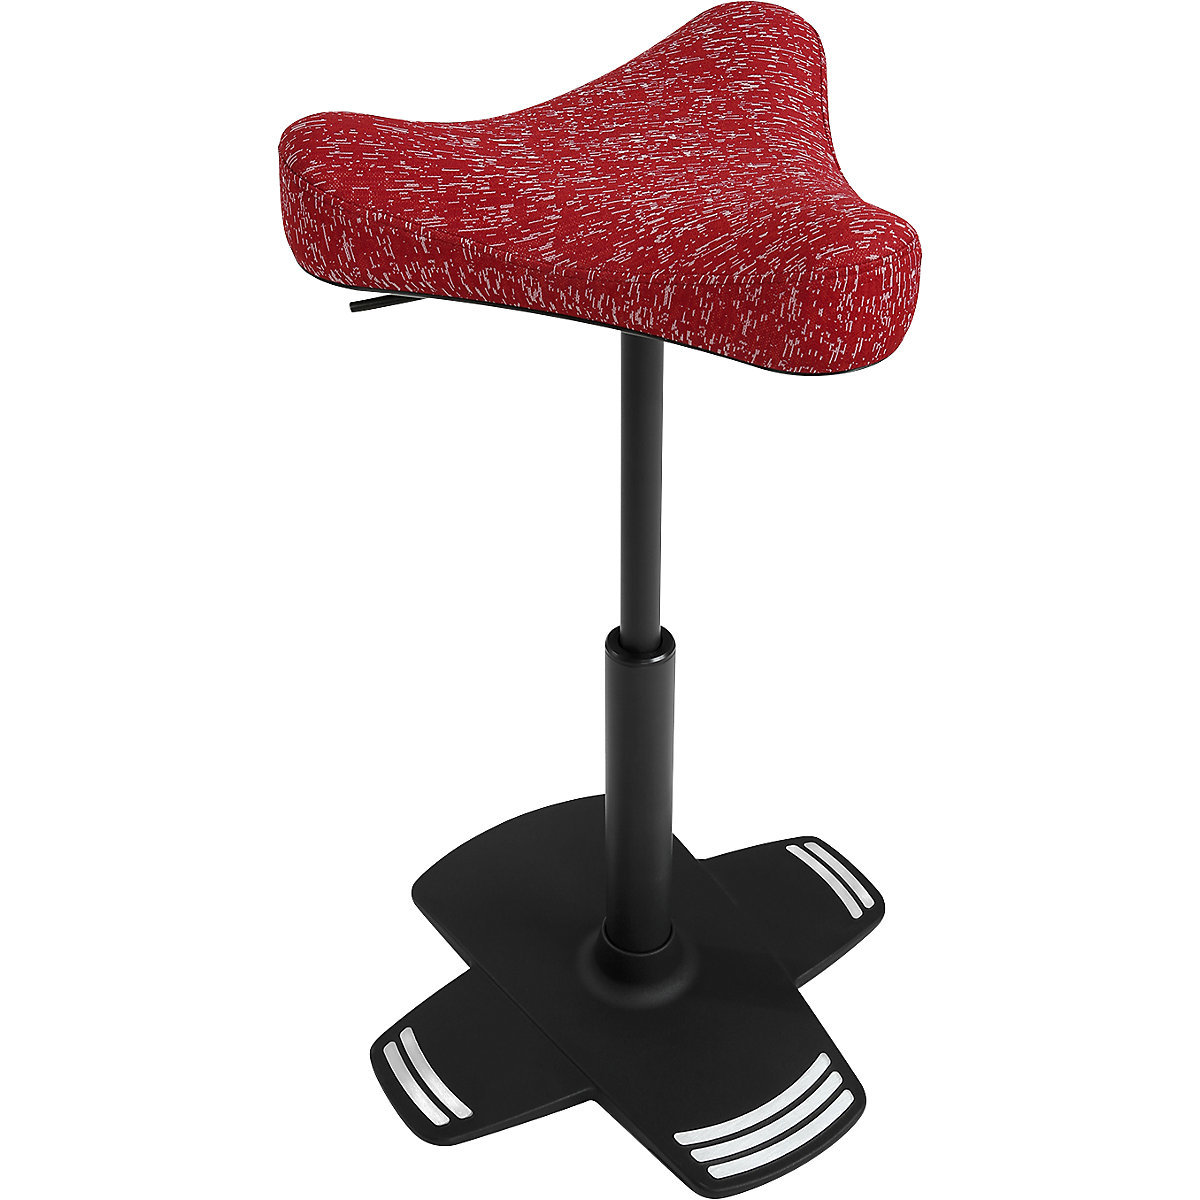 Apoio de pé SITNESS FALCON – Topstar, com assento ergonómico em forma de selim, forro vermelho-7